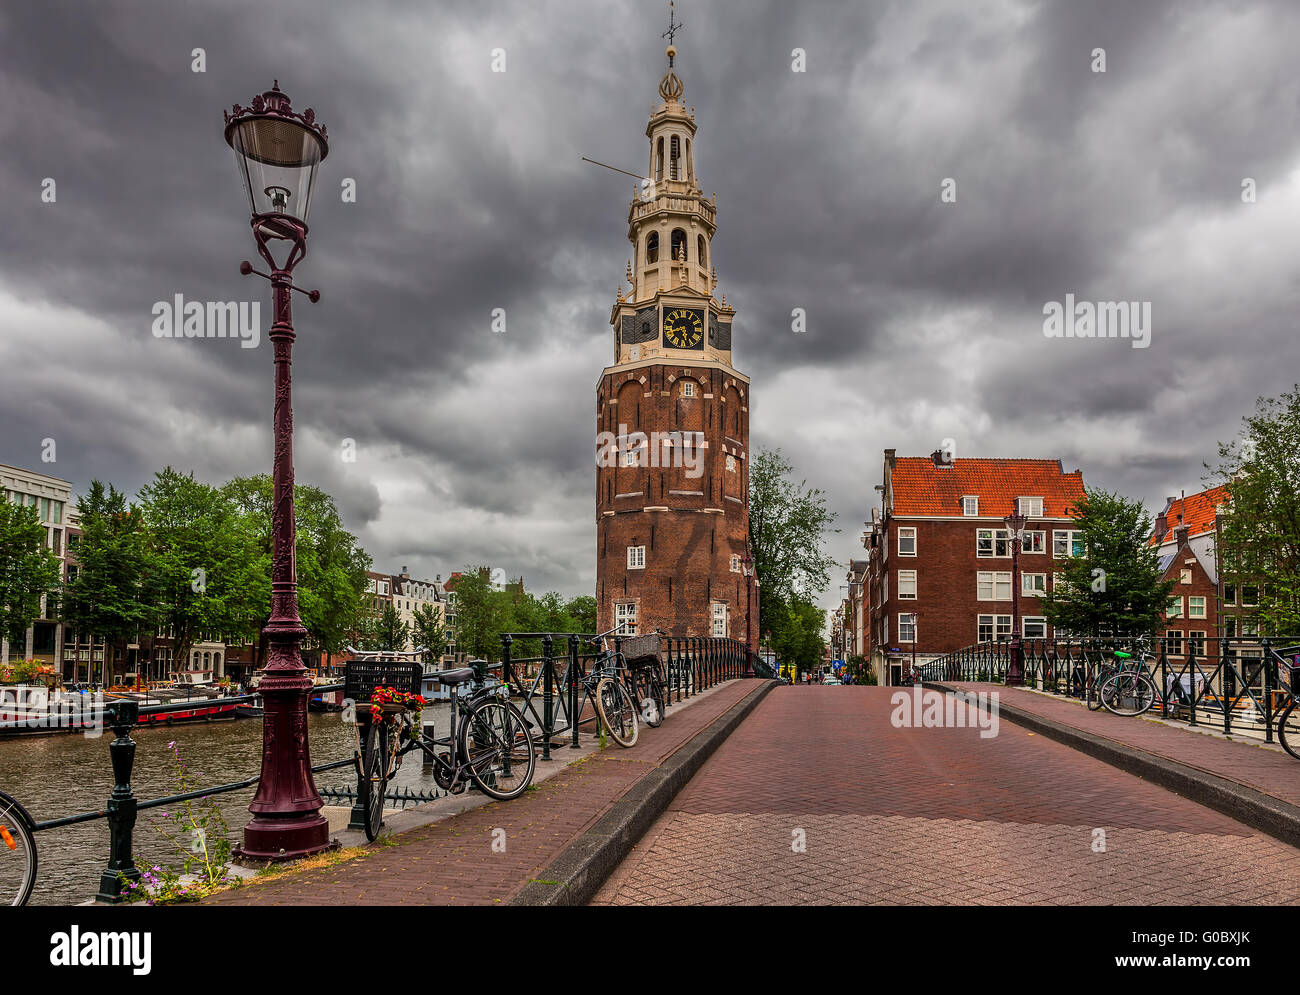 Lampadaire sur le pont et la tour Montelbaanstoren spectaculaire sous ciel nuageux à Amsterdam, Pays-Bas. Banque D'Images